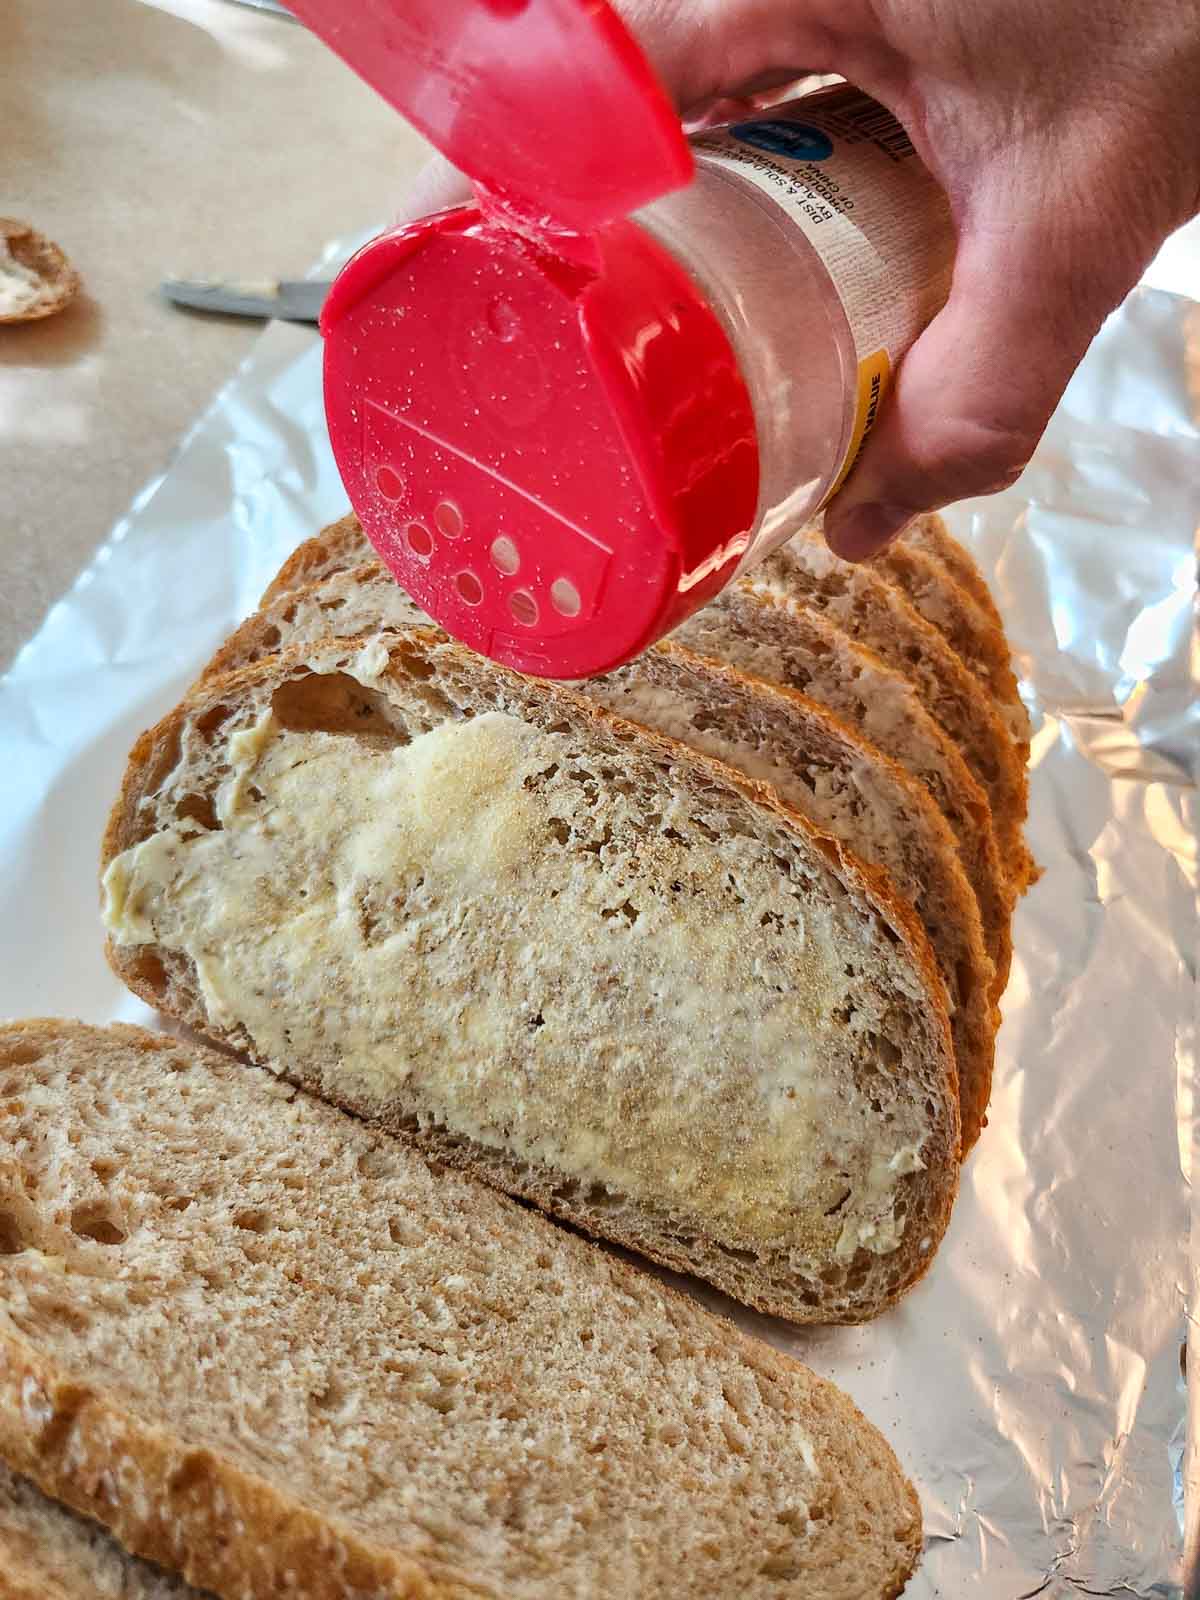 sprinkling garlic powder on bread